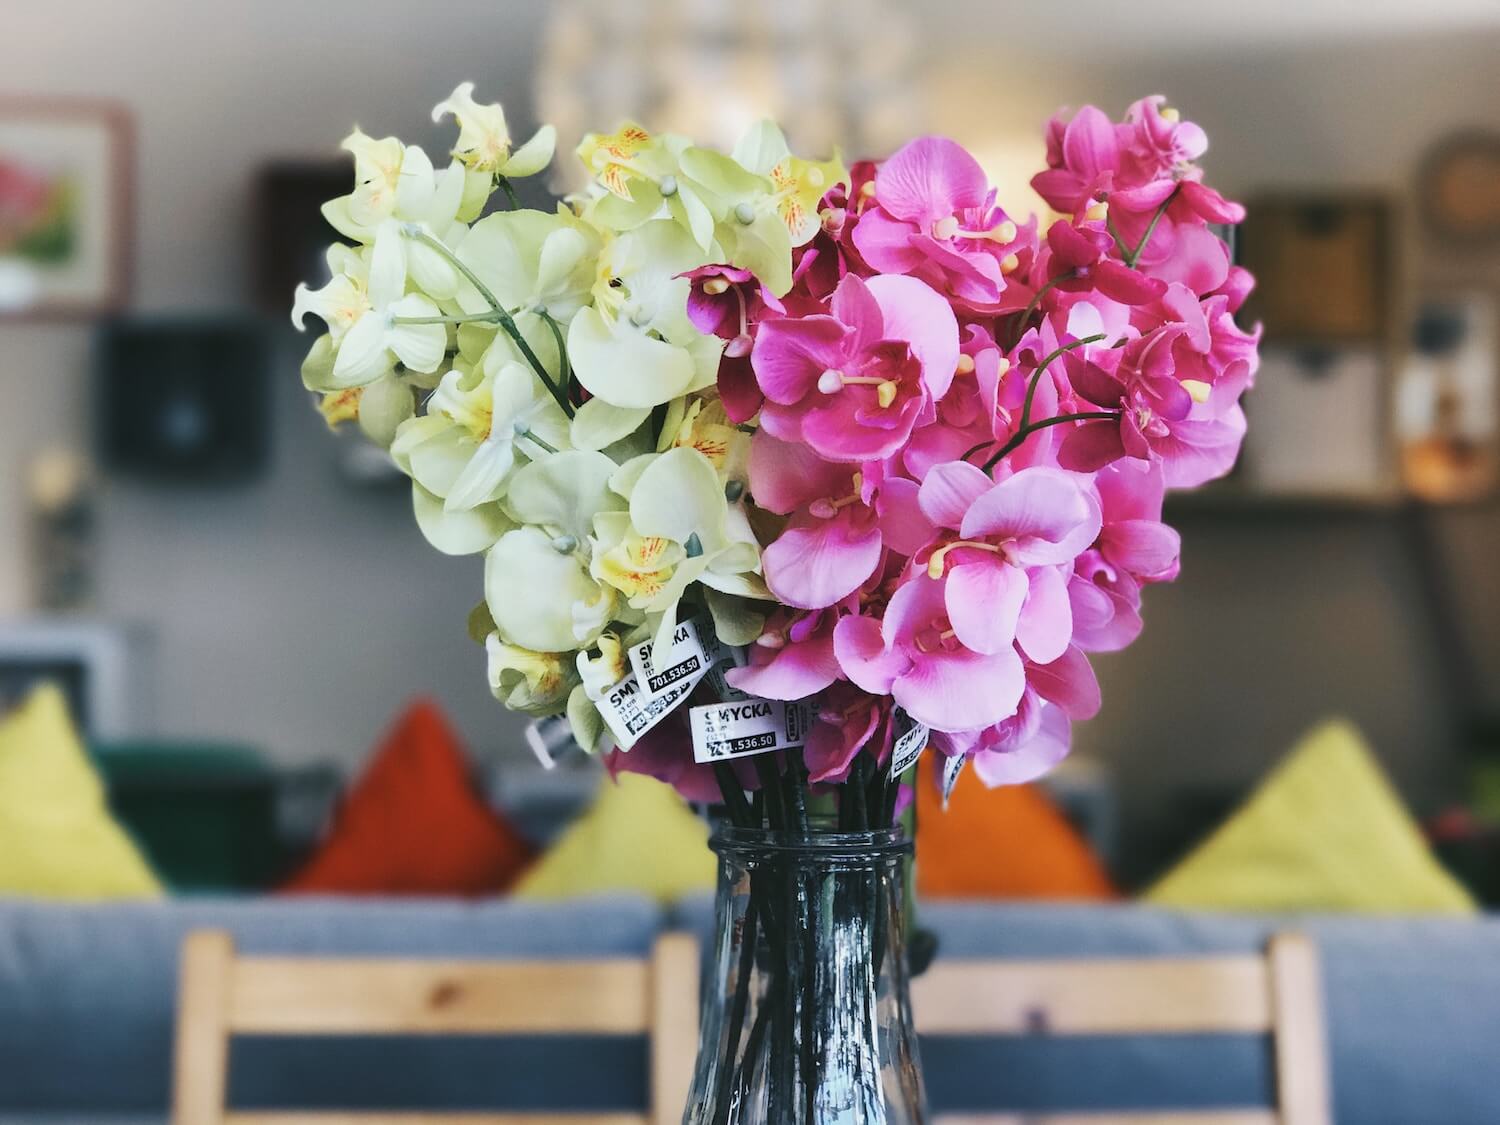 Hurtownia sztucznych kwiatów - nie tylko dla florystów!